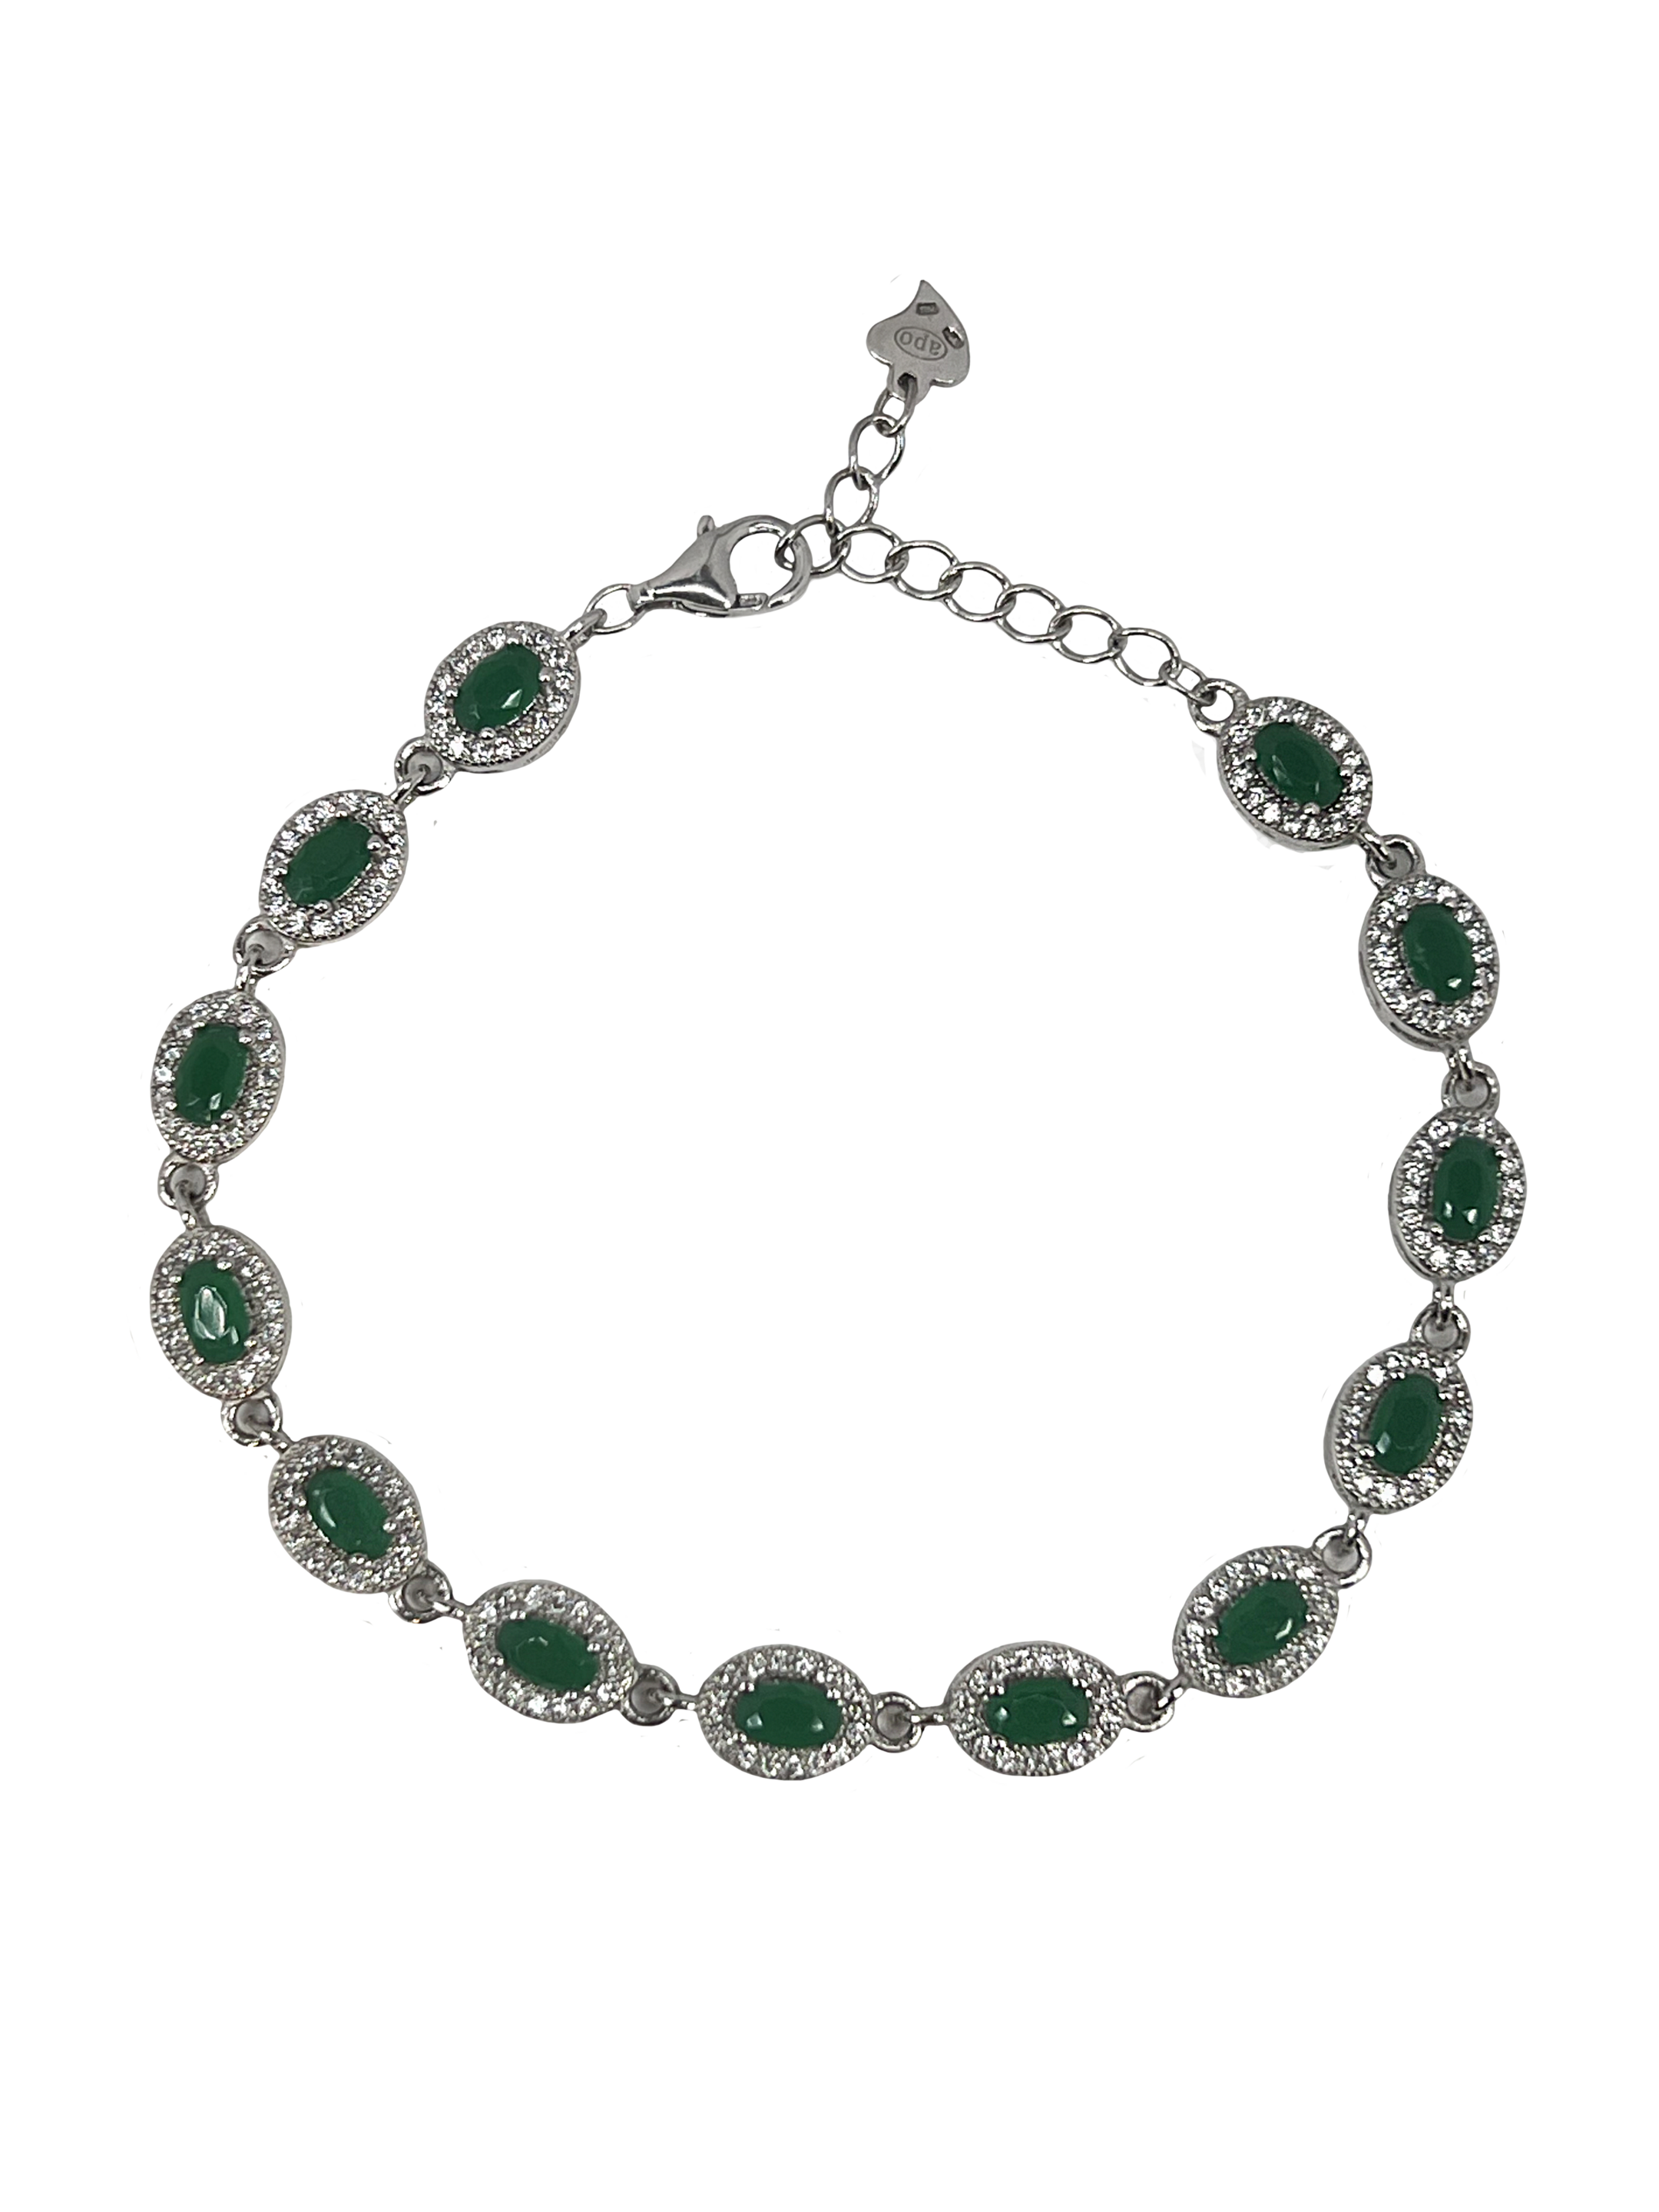 Bracciale in argento con cristalli e pietre verdi